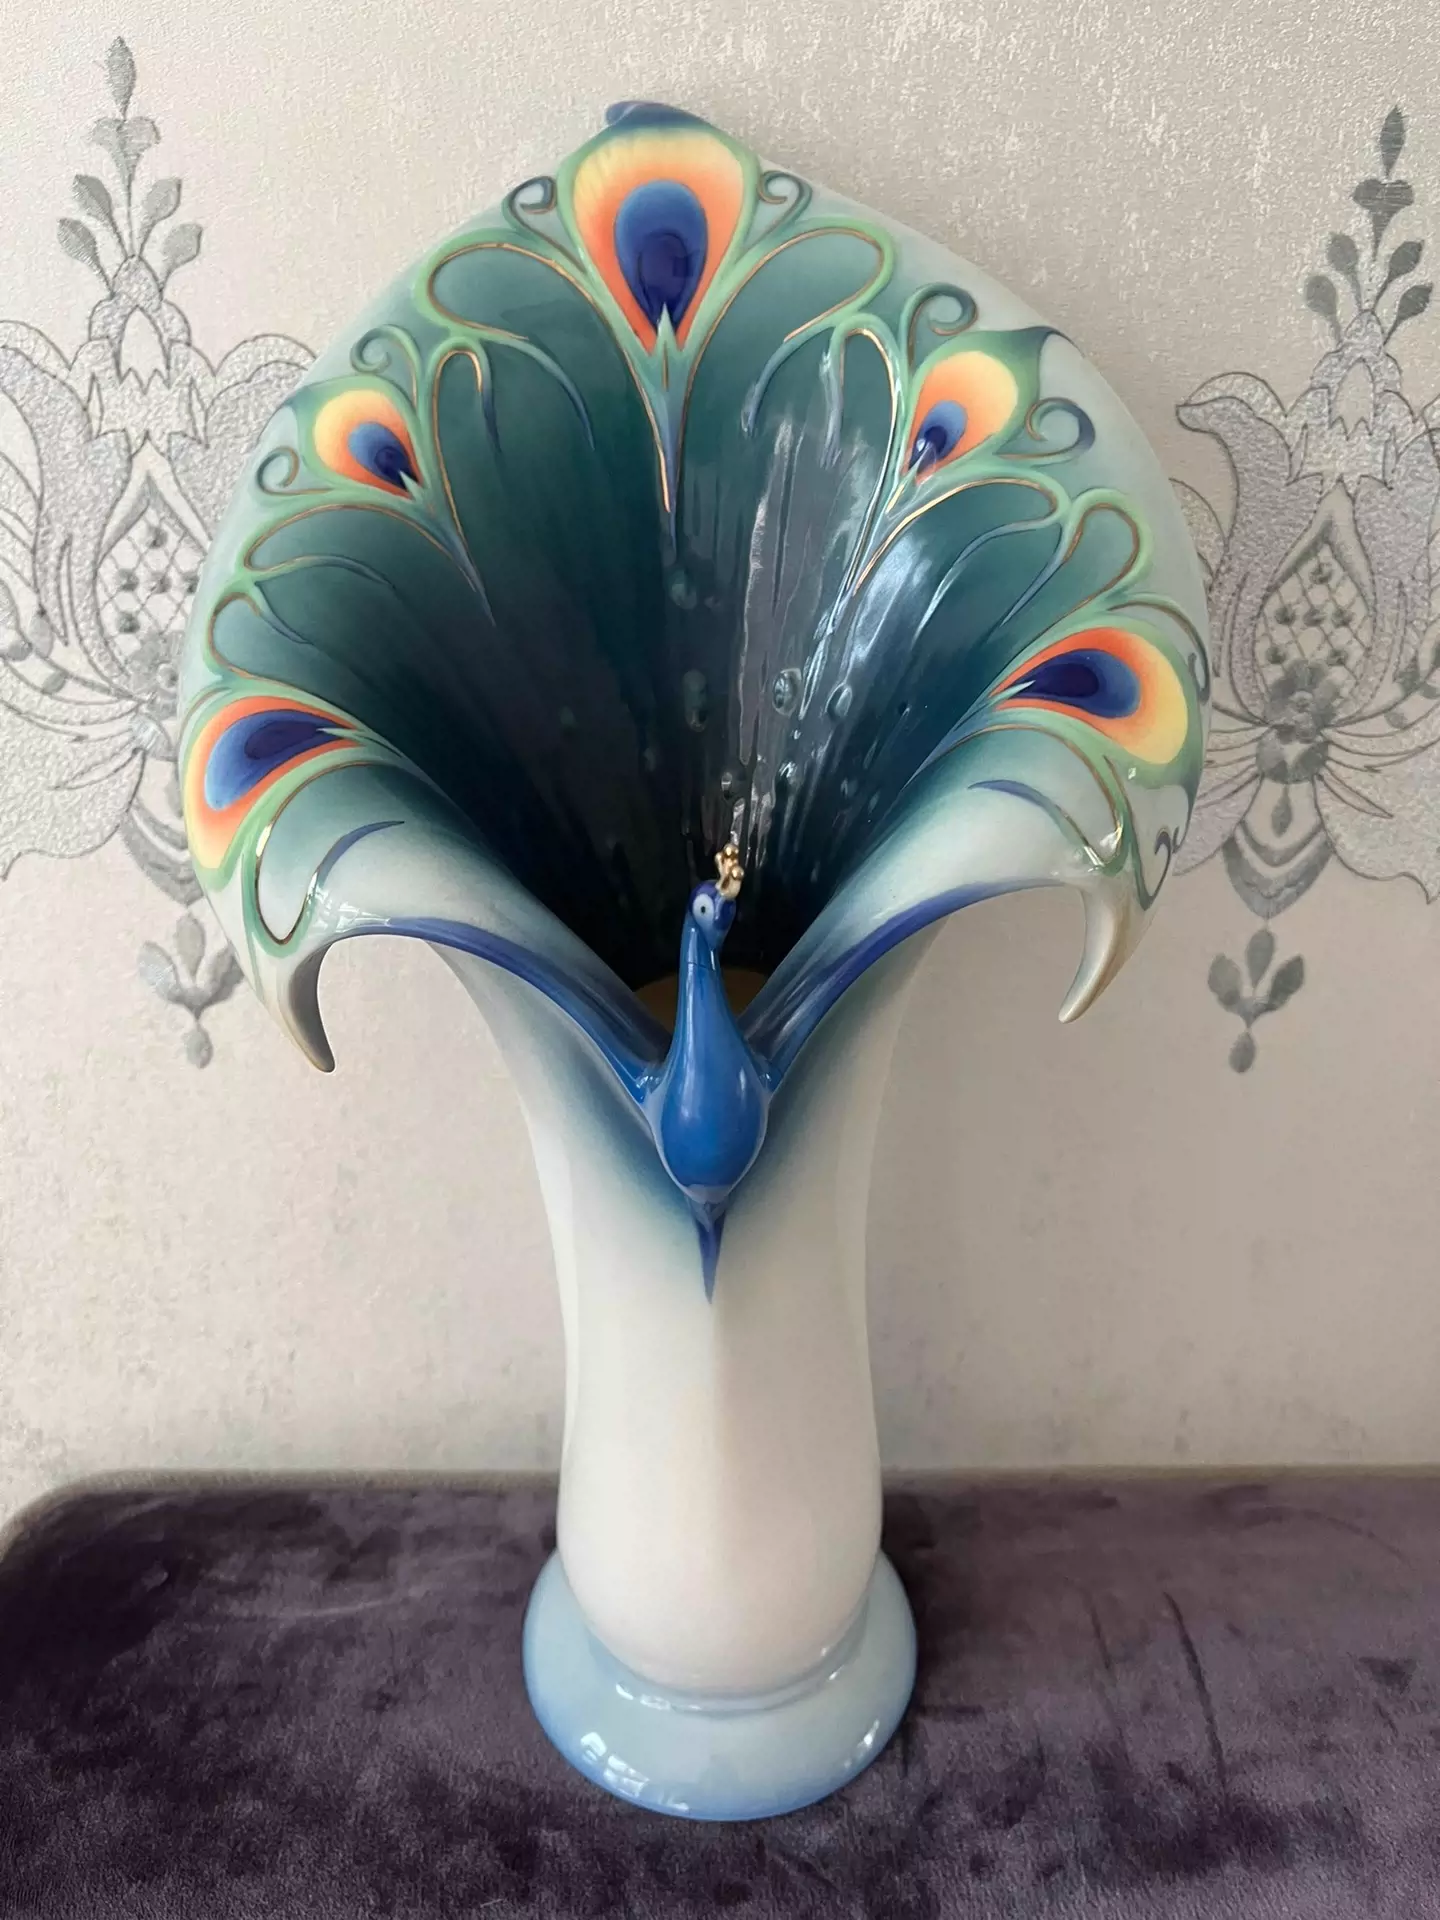 Franz フランツ 鳥花瓶 - 花瓶